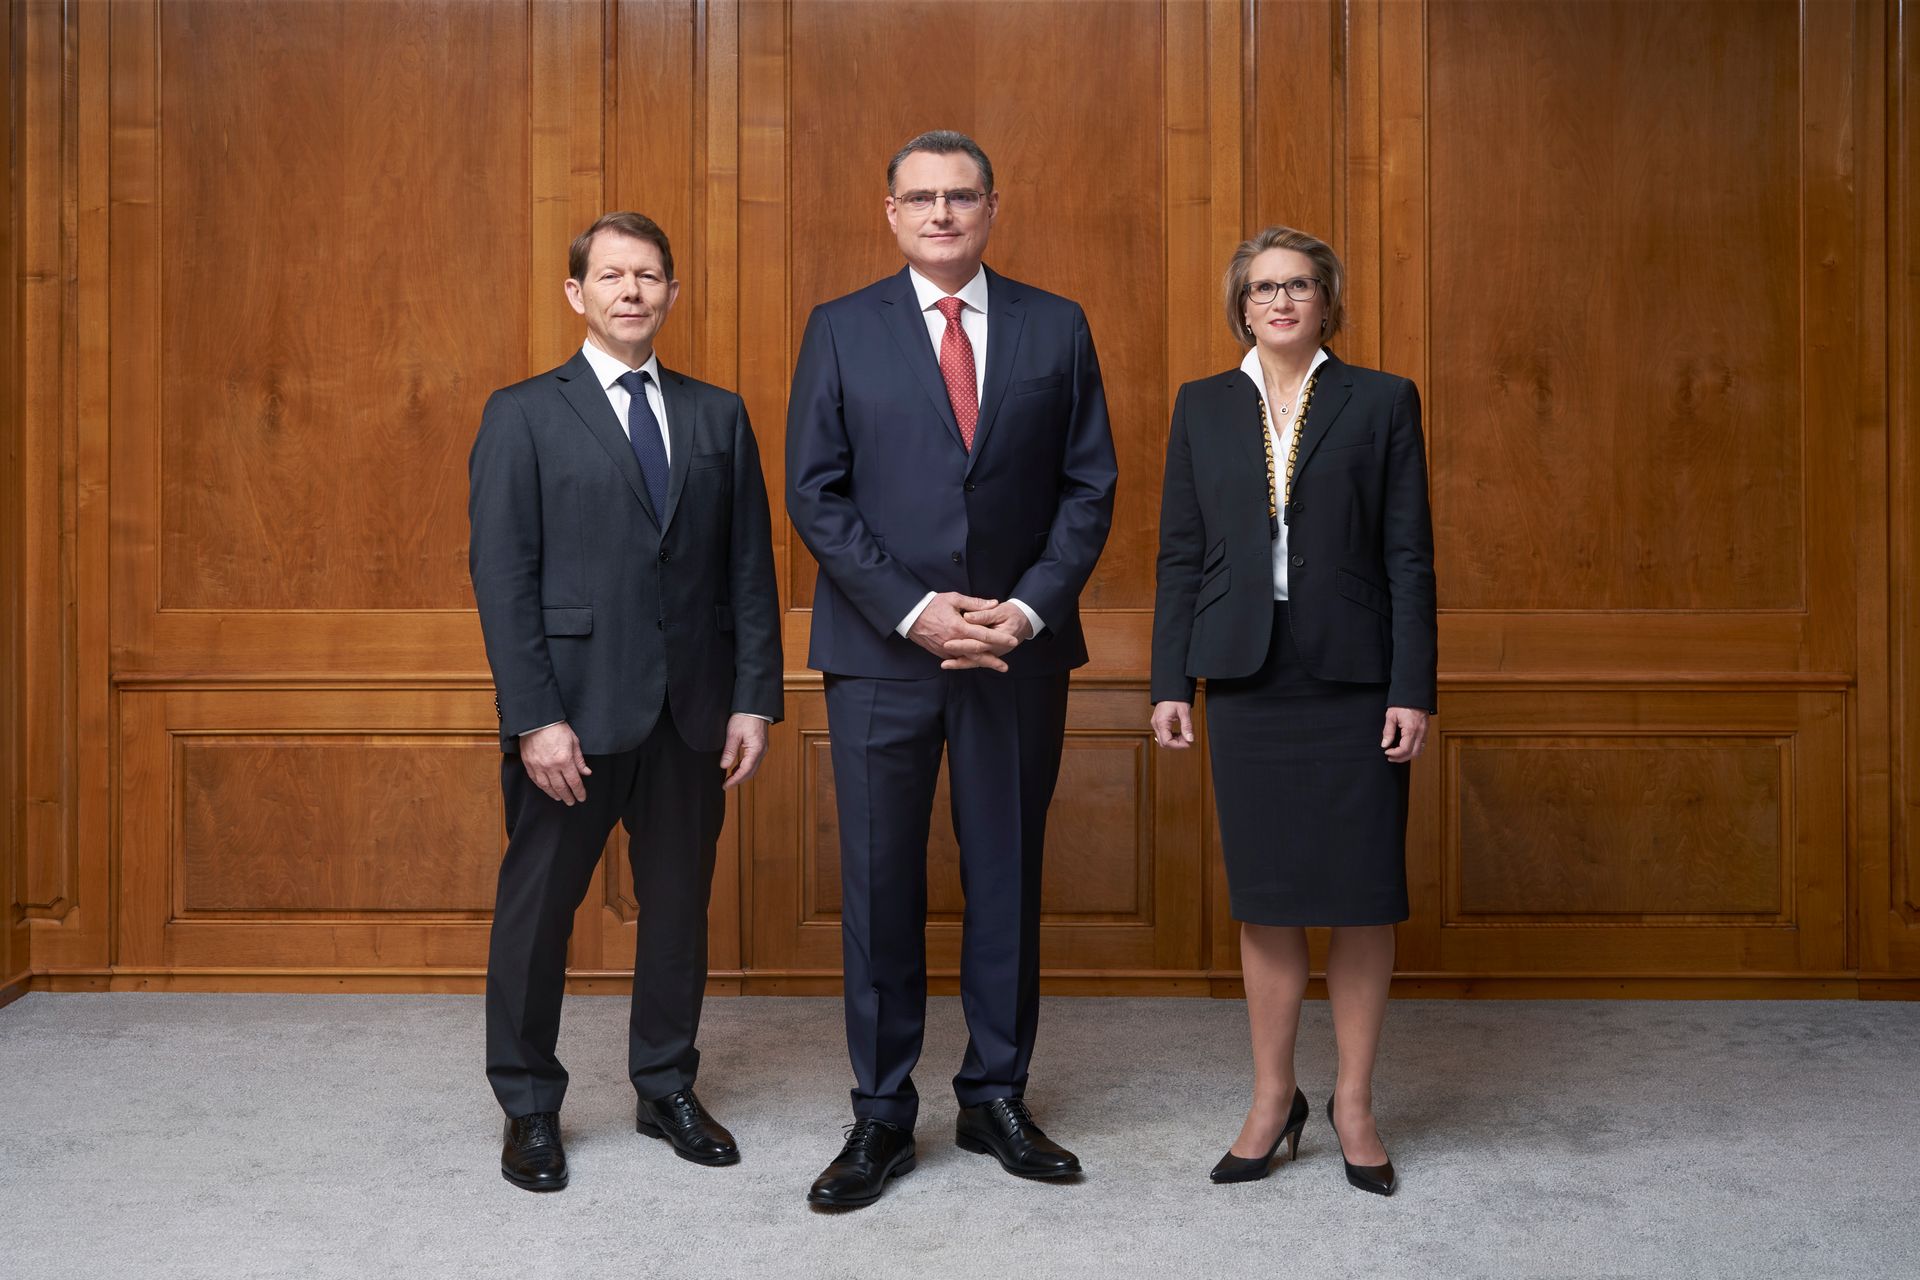 Výkonná rada Švýcarské národní banky (Fritz Zurbrügg, Thomas Jordan a Andréa Michaela Maechler)